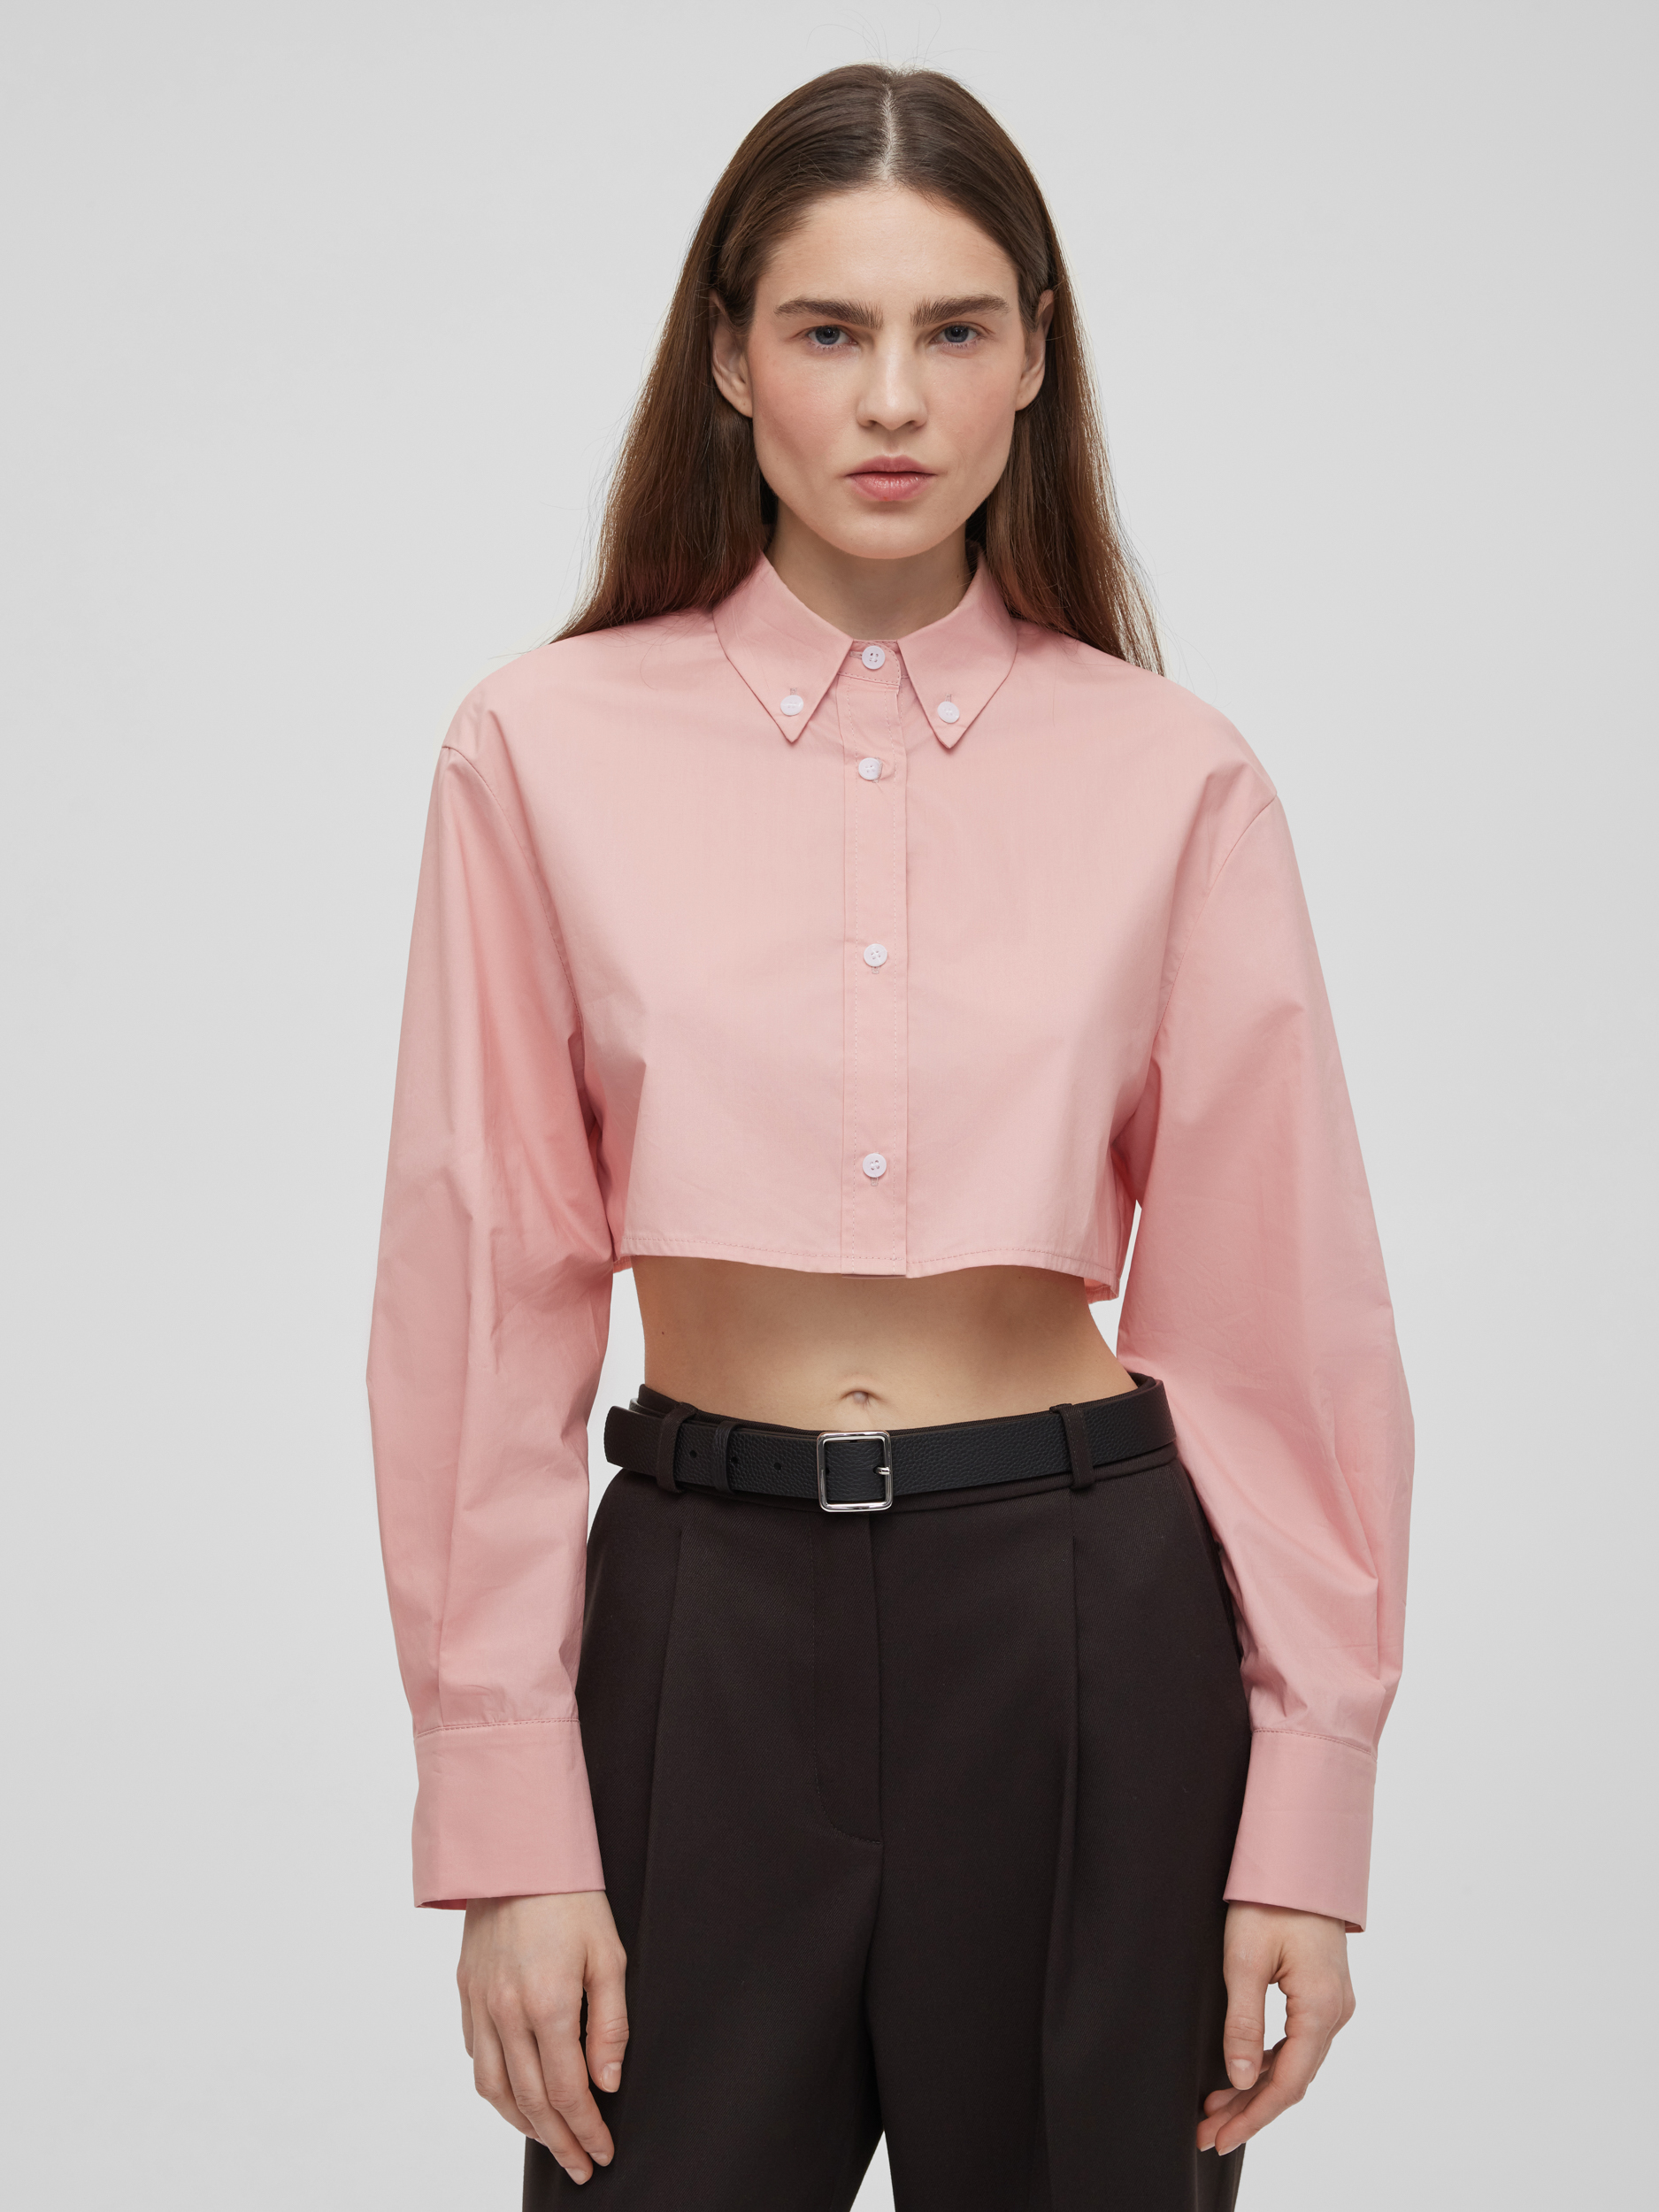 Рубашка женская короткая из хлопка, цвет – розовый